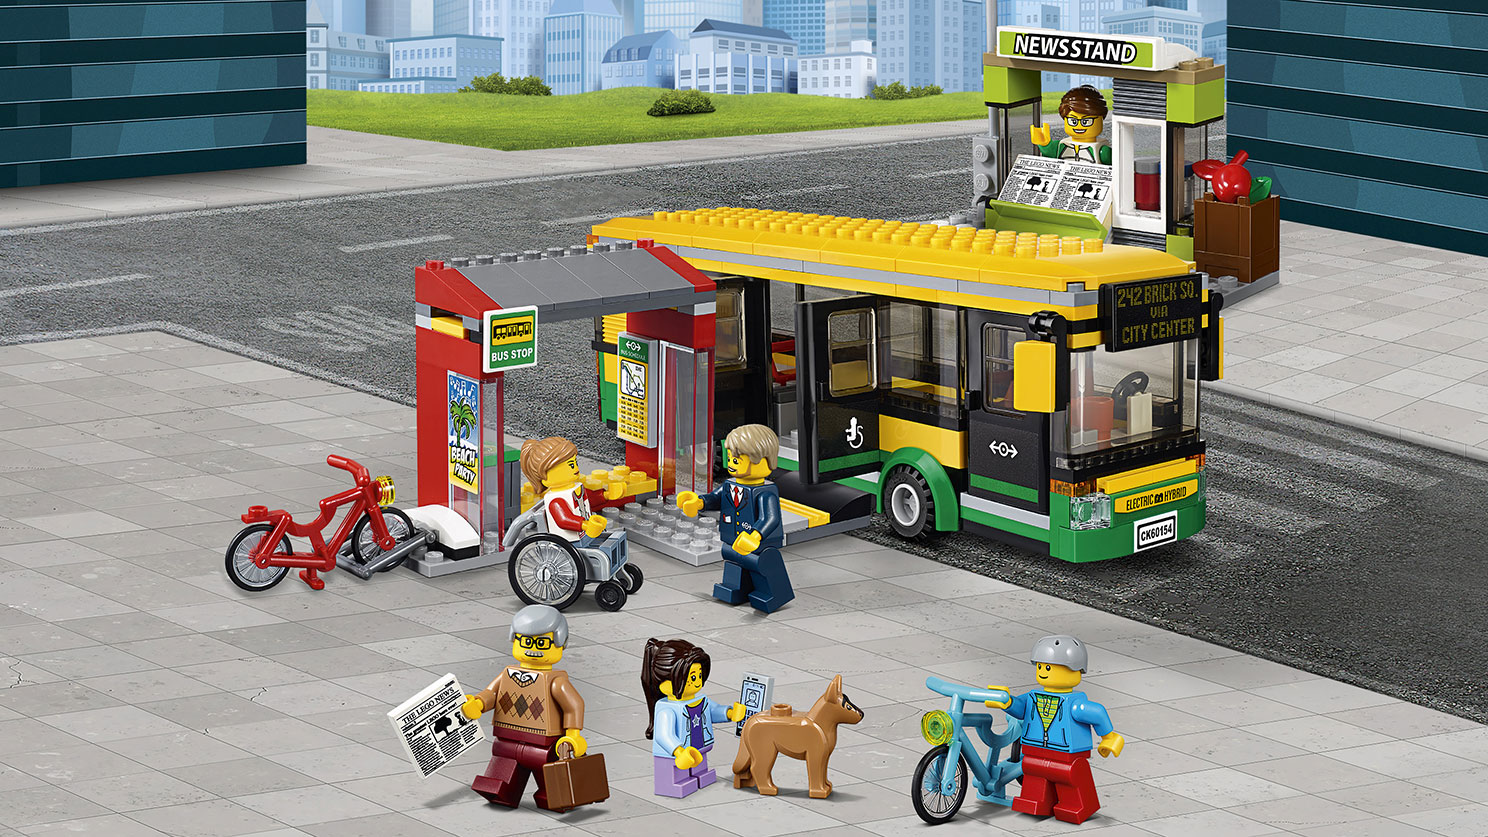 バス停留所 60154 - レゴ®シティ セット - LEGO.comキッズ